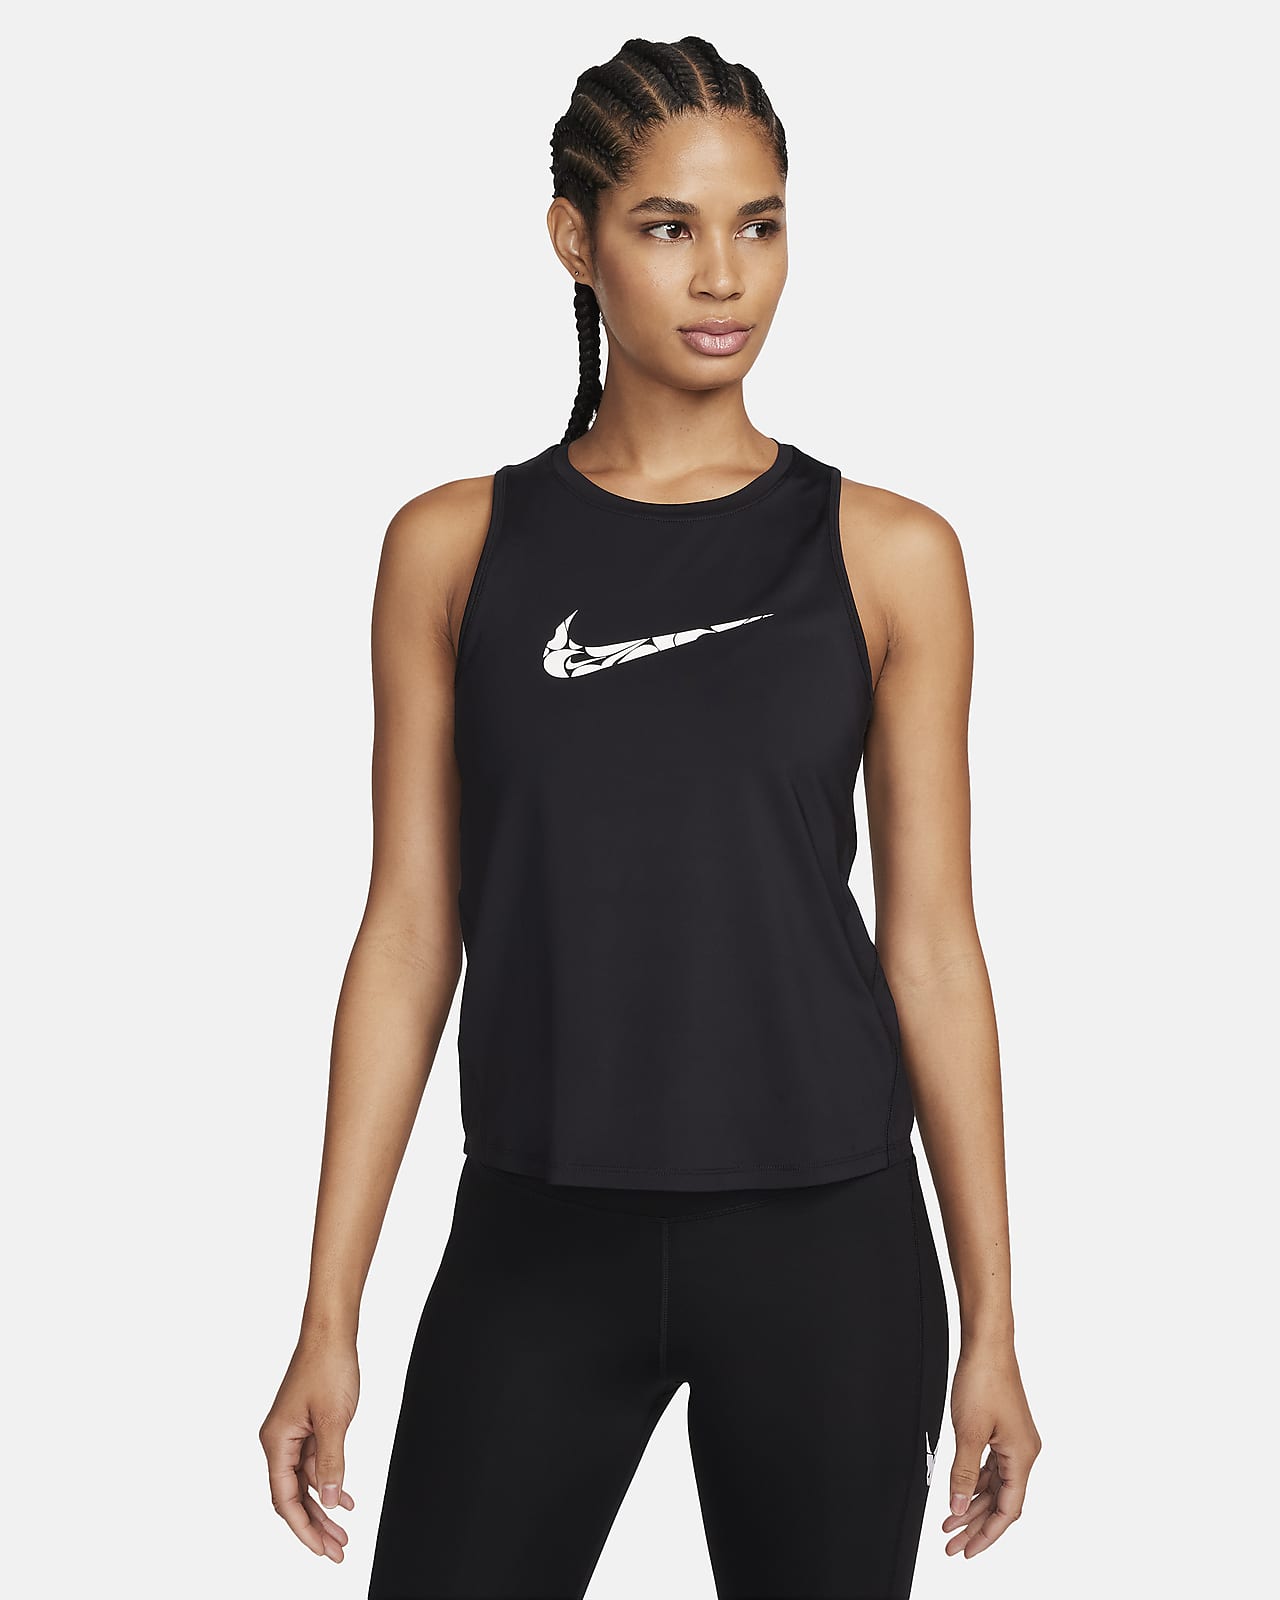 Nike One Grafikli Kadın Koşu Atleti